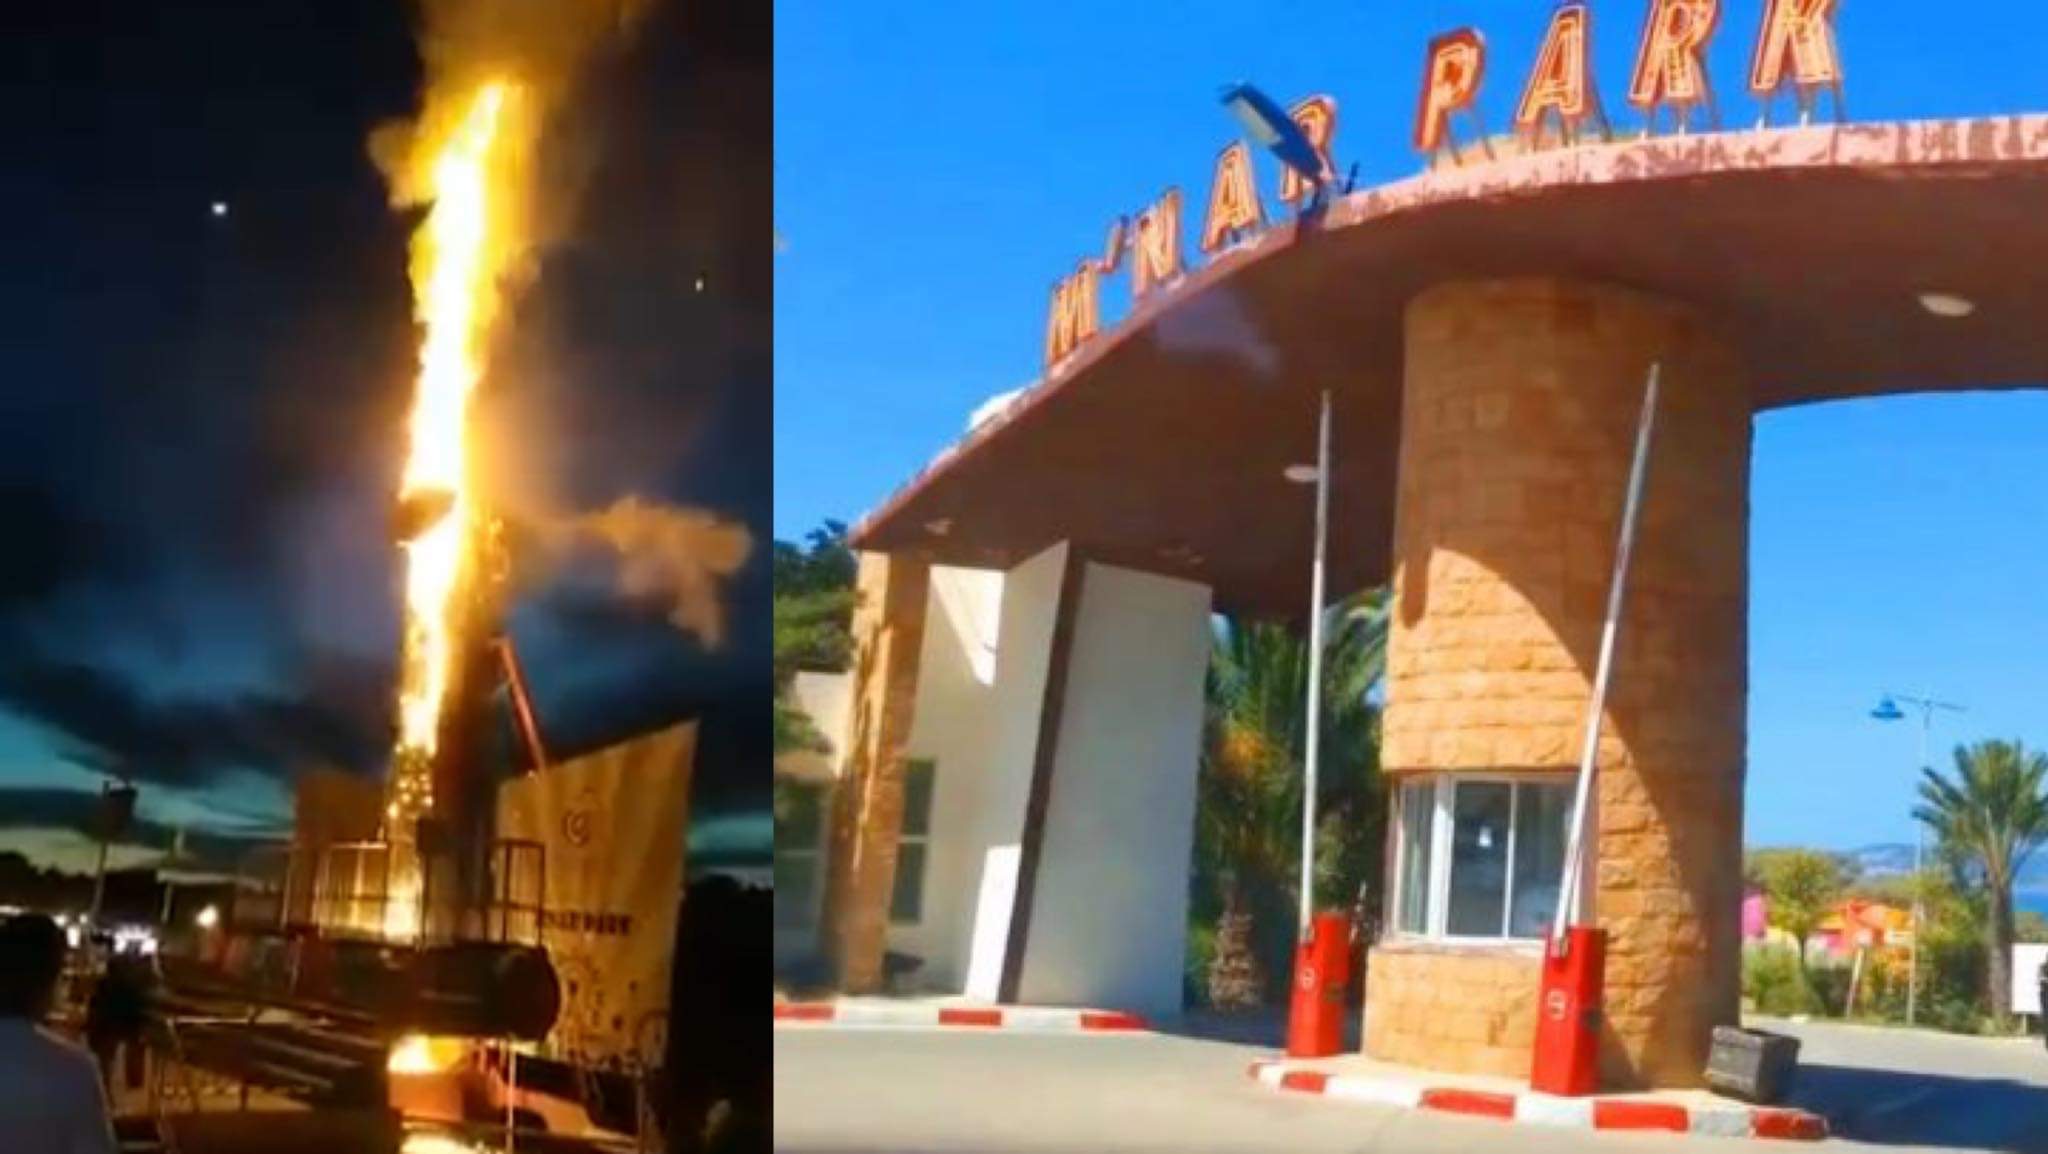 السلطات تغلق جناح الألعاب الترفيهية بمنتجع مناربارك بعد حريق مهول في لعبة